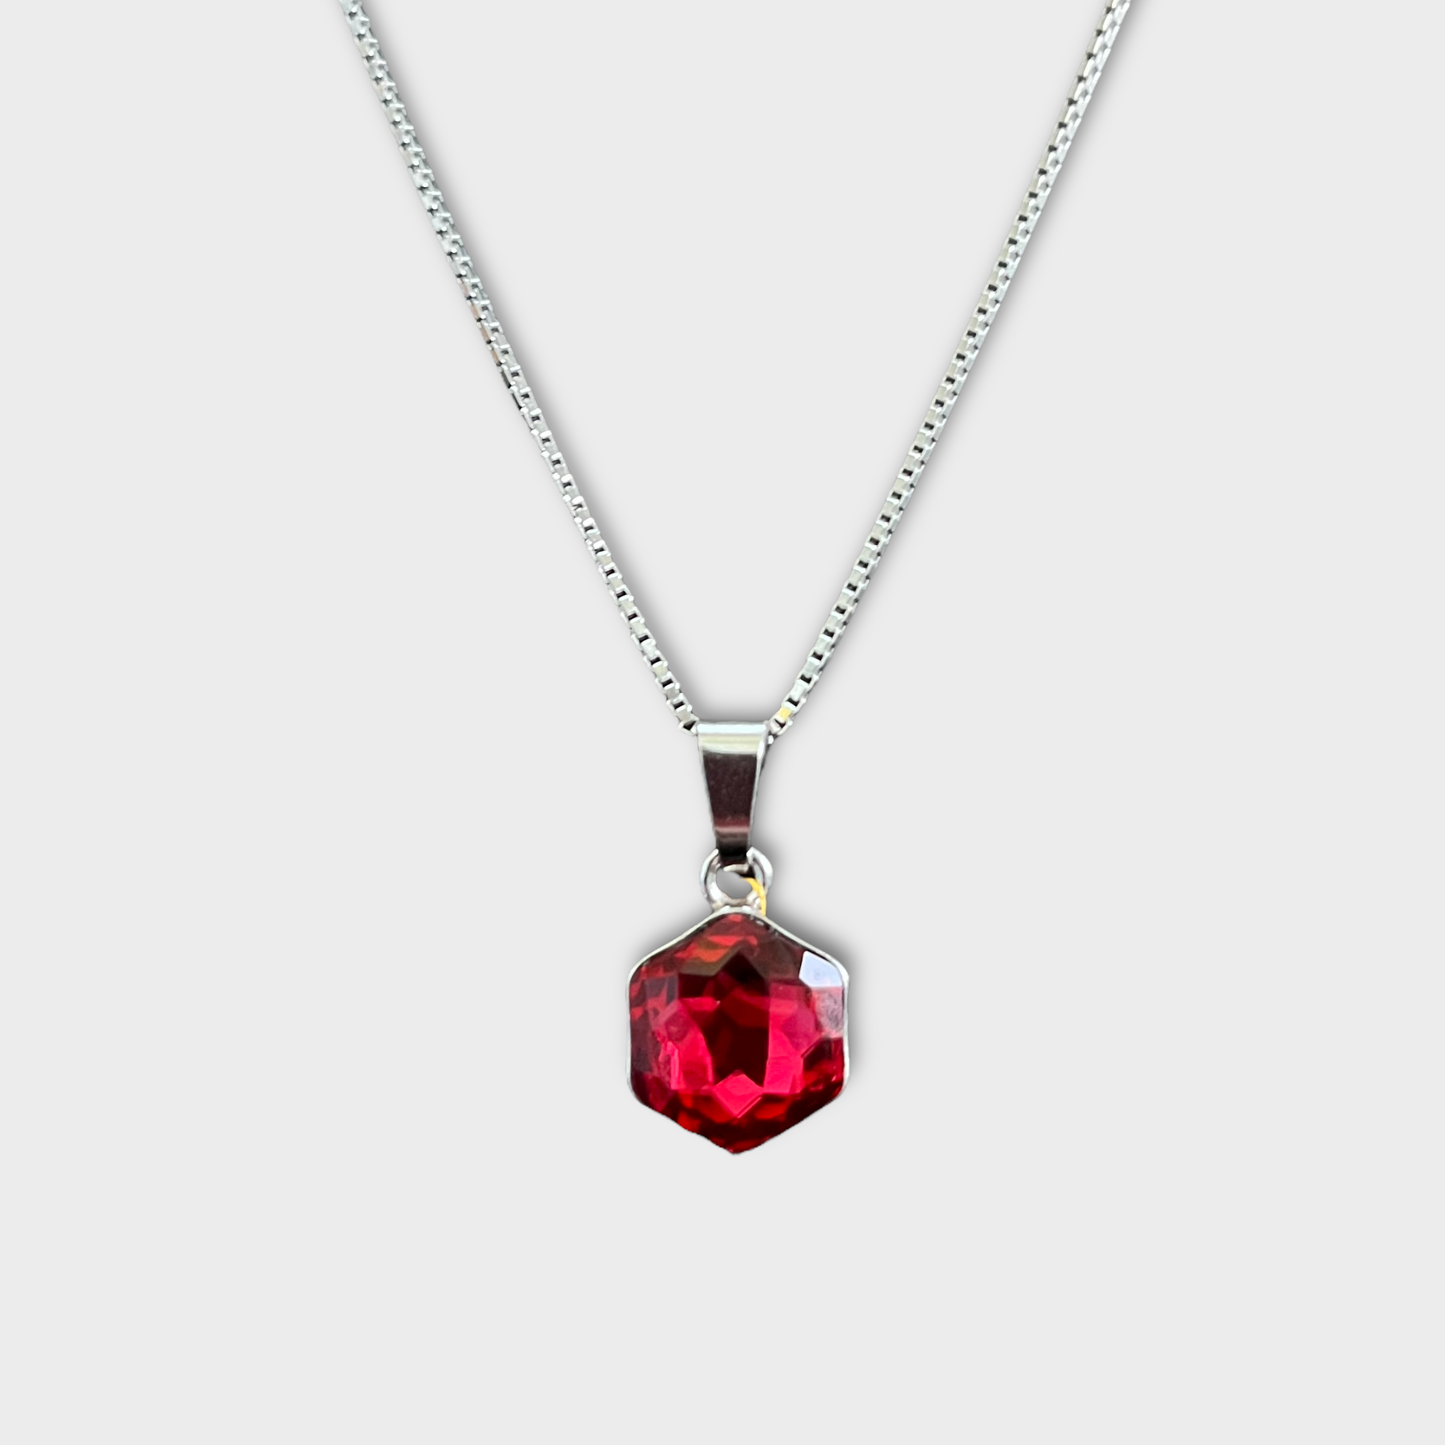 Collier avec cristaux Swarovski, collection HONEY, rouge clair, argent rhodié